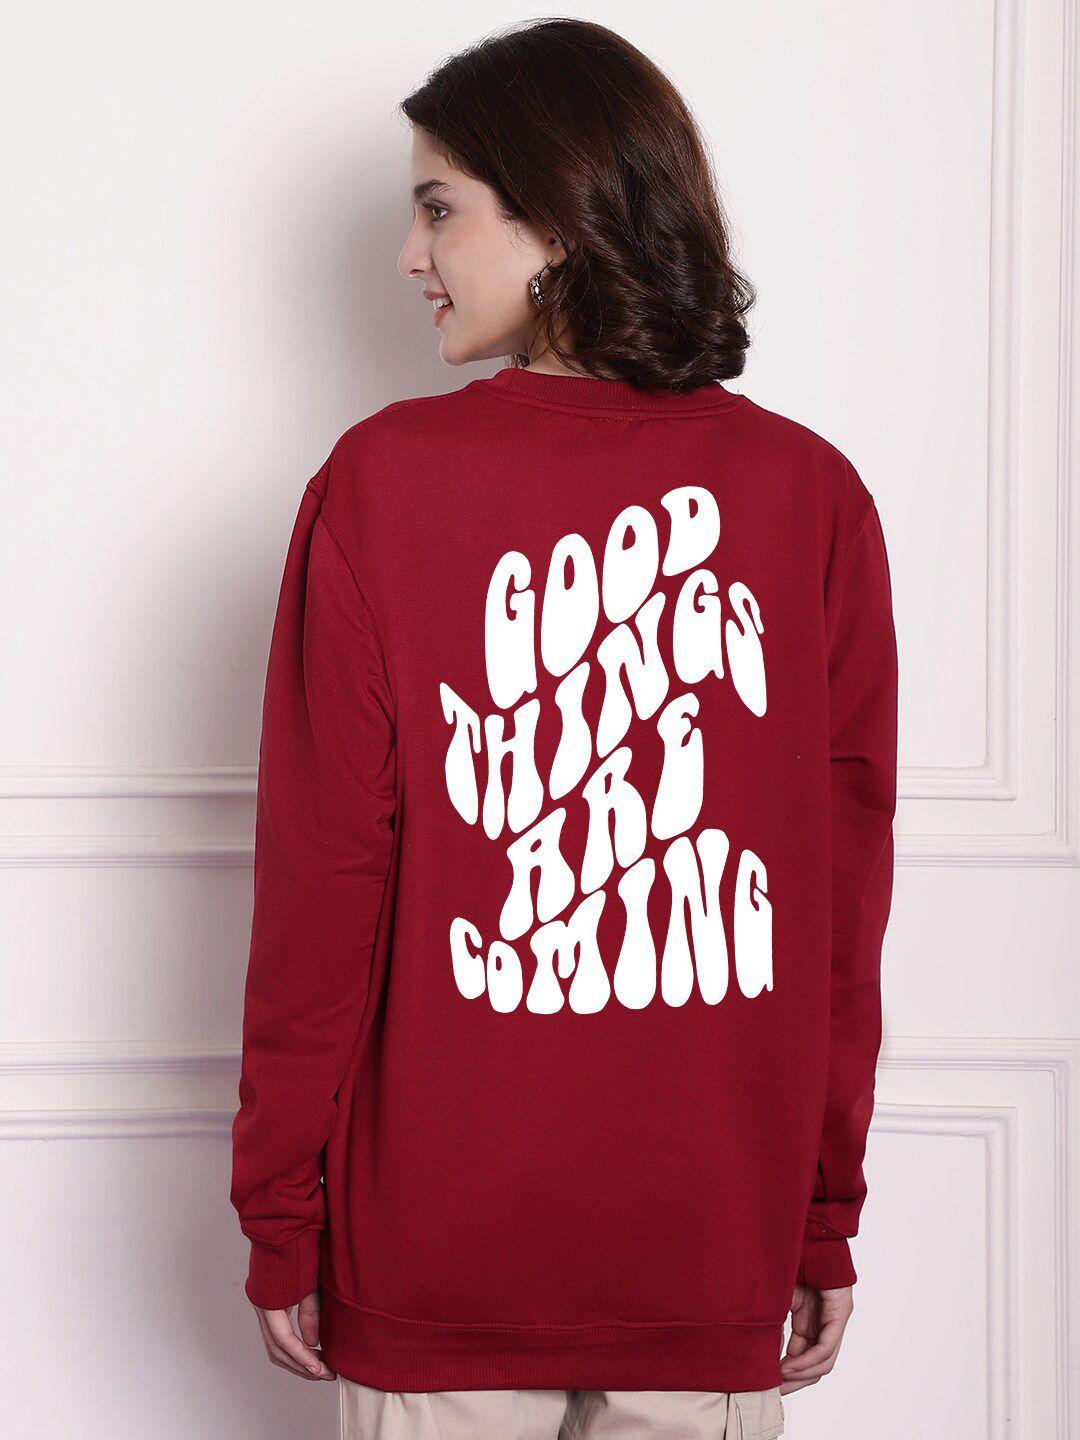 imsa moda typography printed sweatshirt